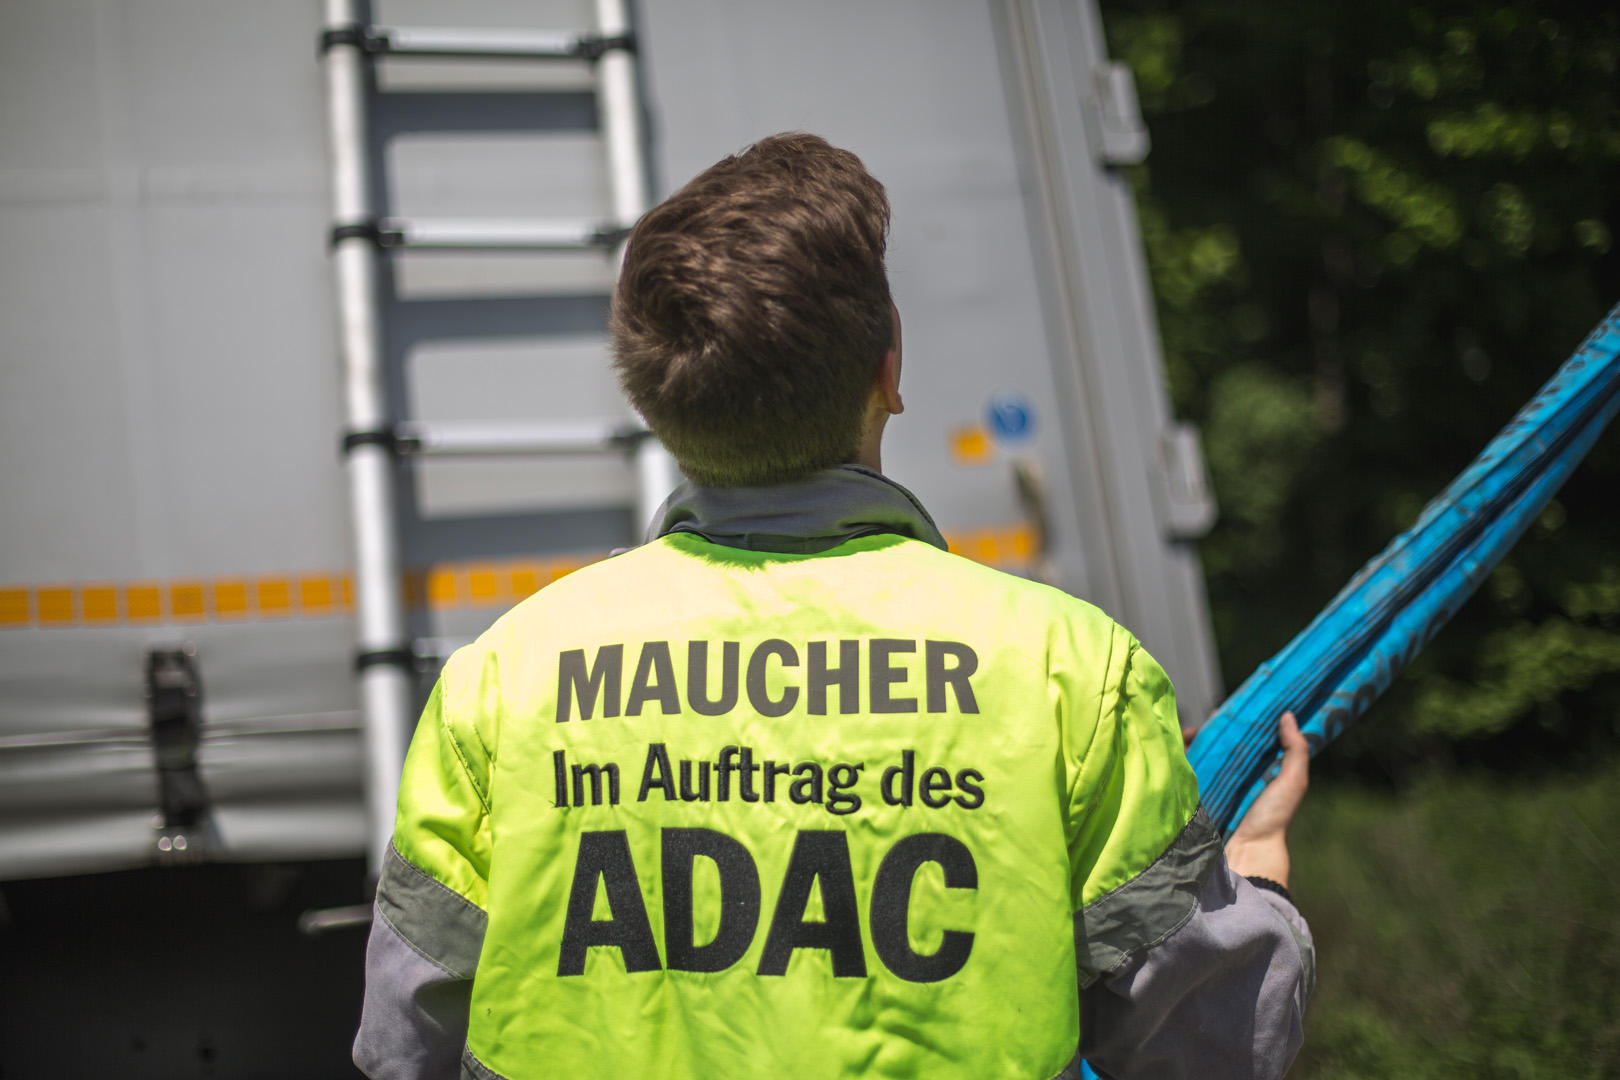 Bilder Maucher Service GmbH